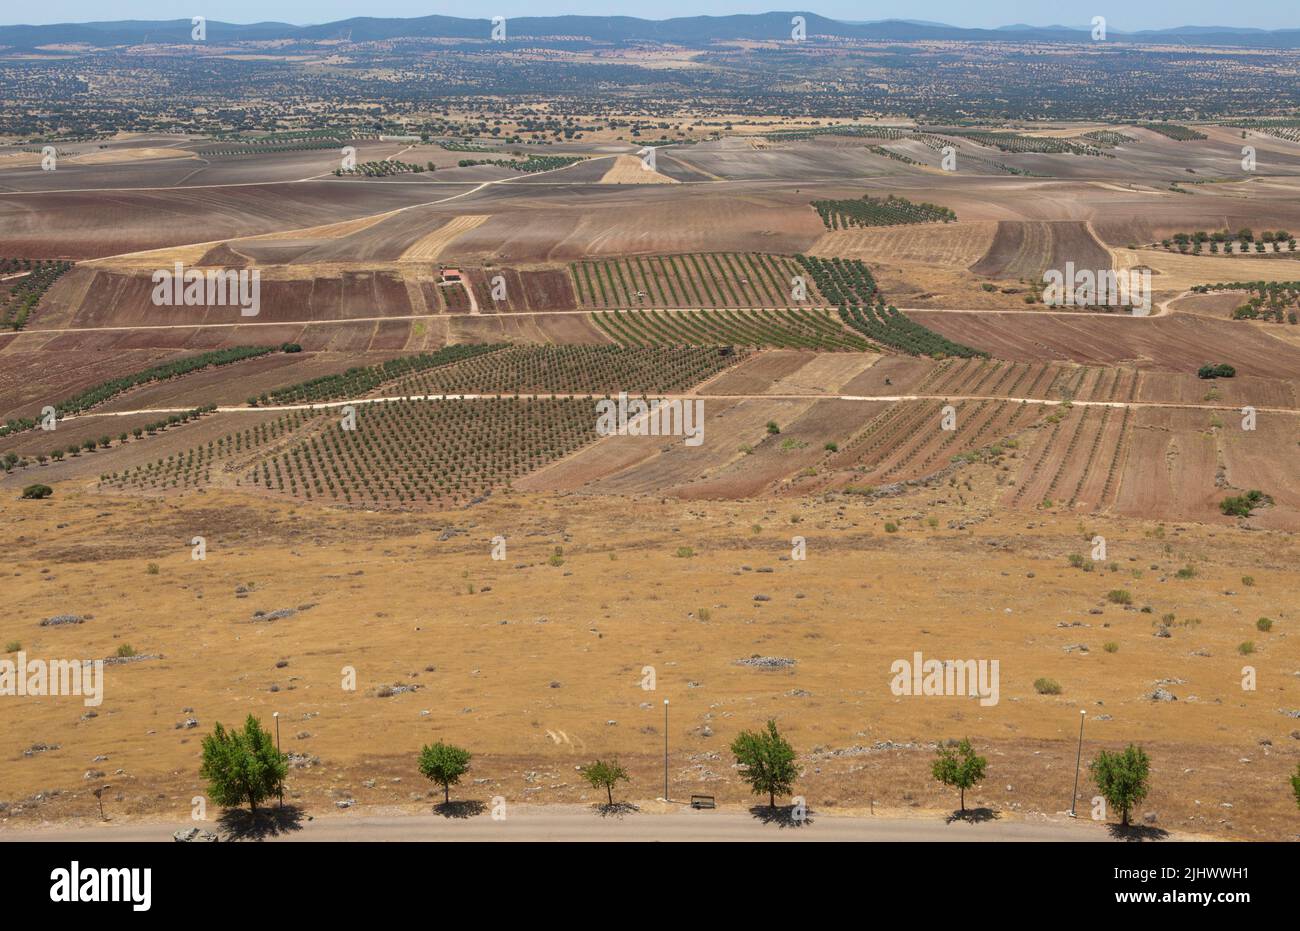 Vista general del barrio de La Serena desde el Castillo de Magacela, Badajoz, Extremadura, España Foto de stock